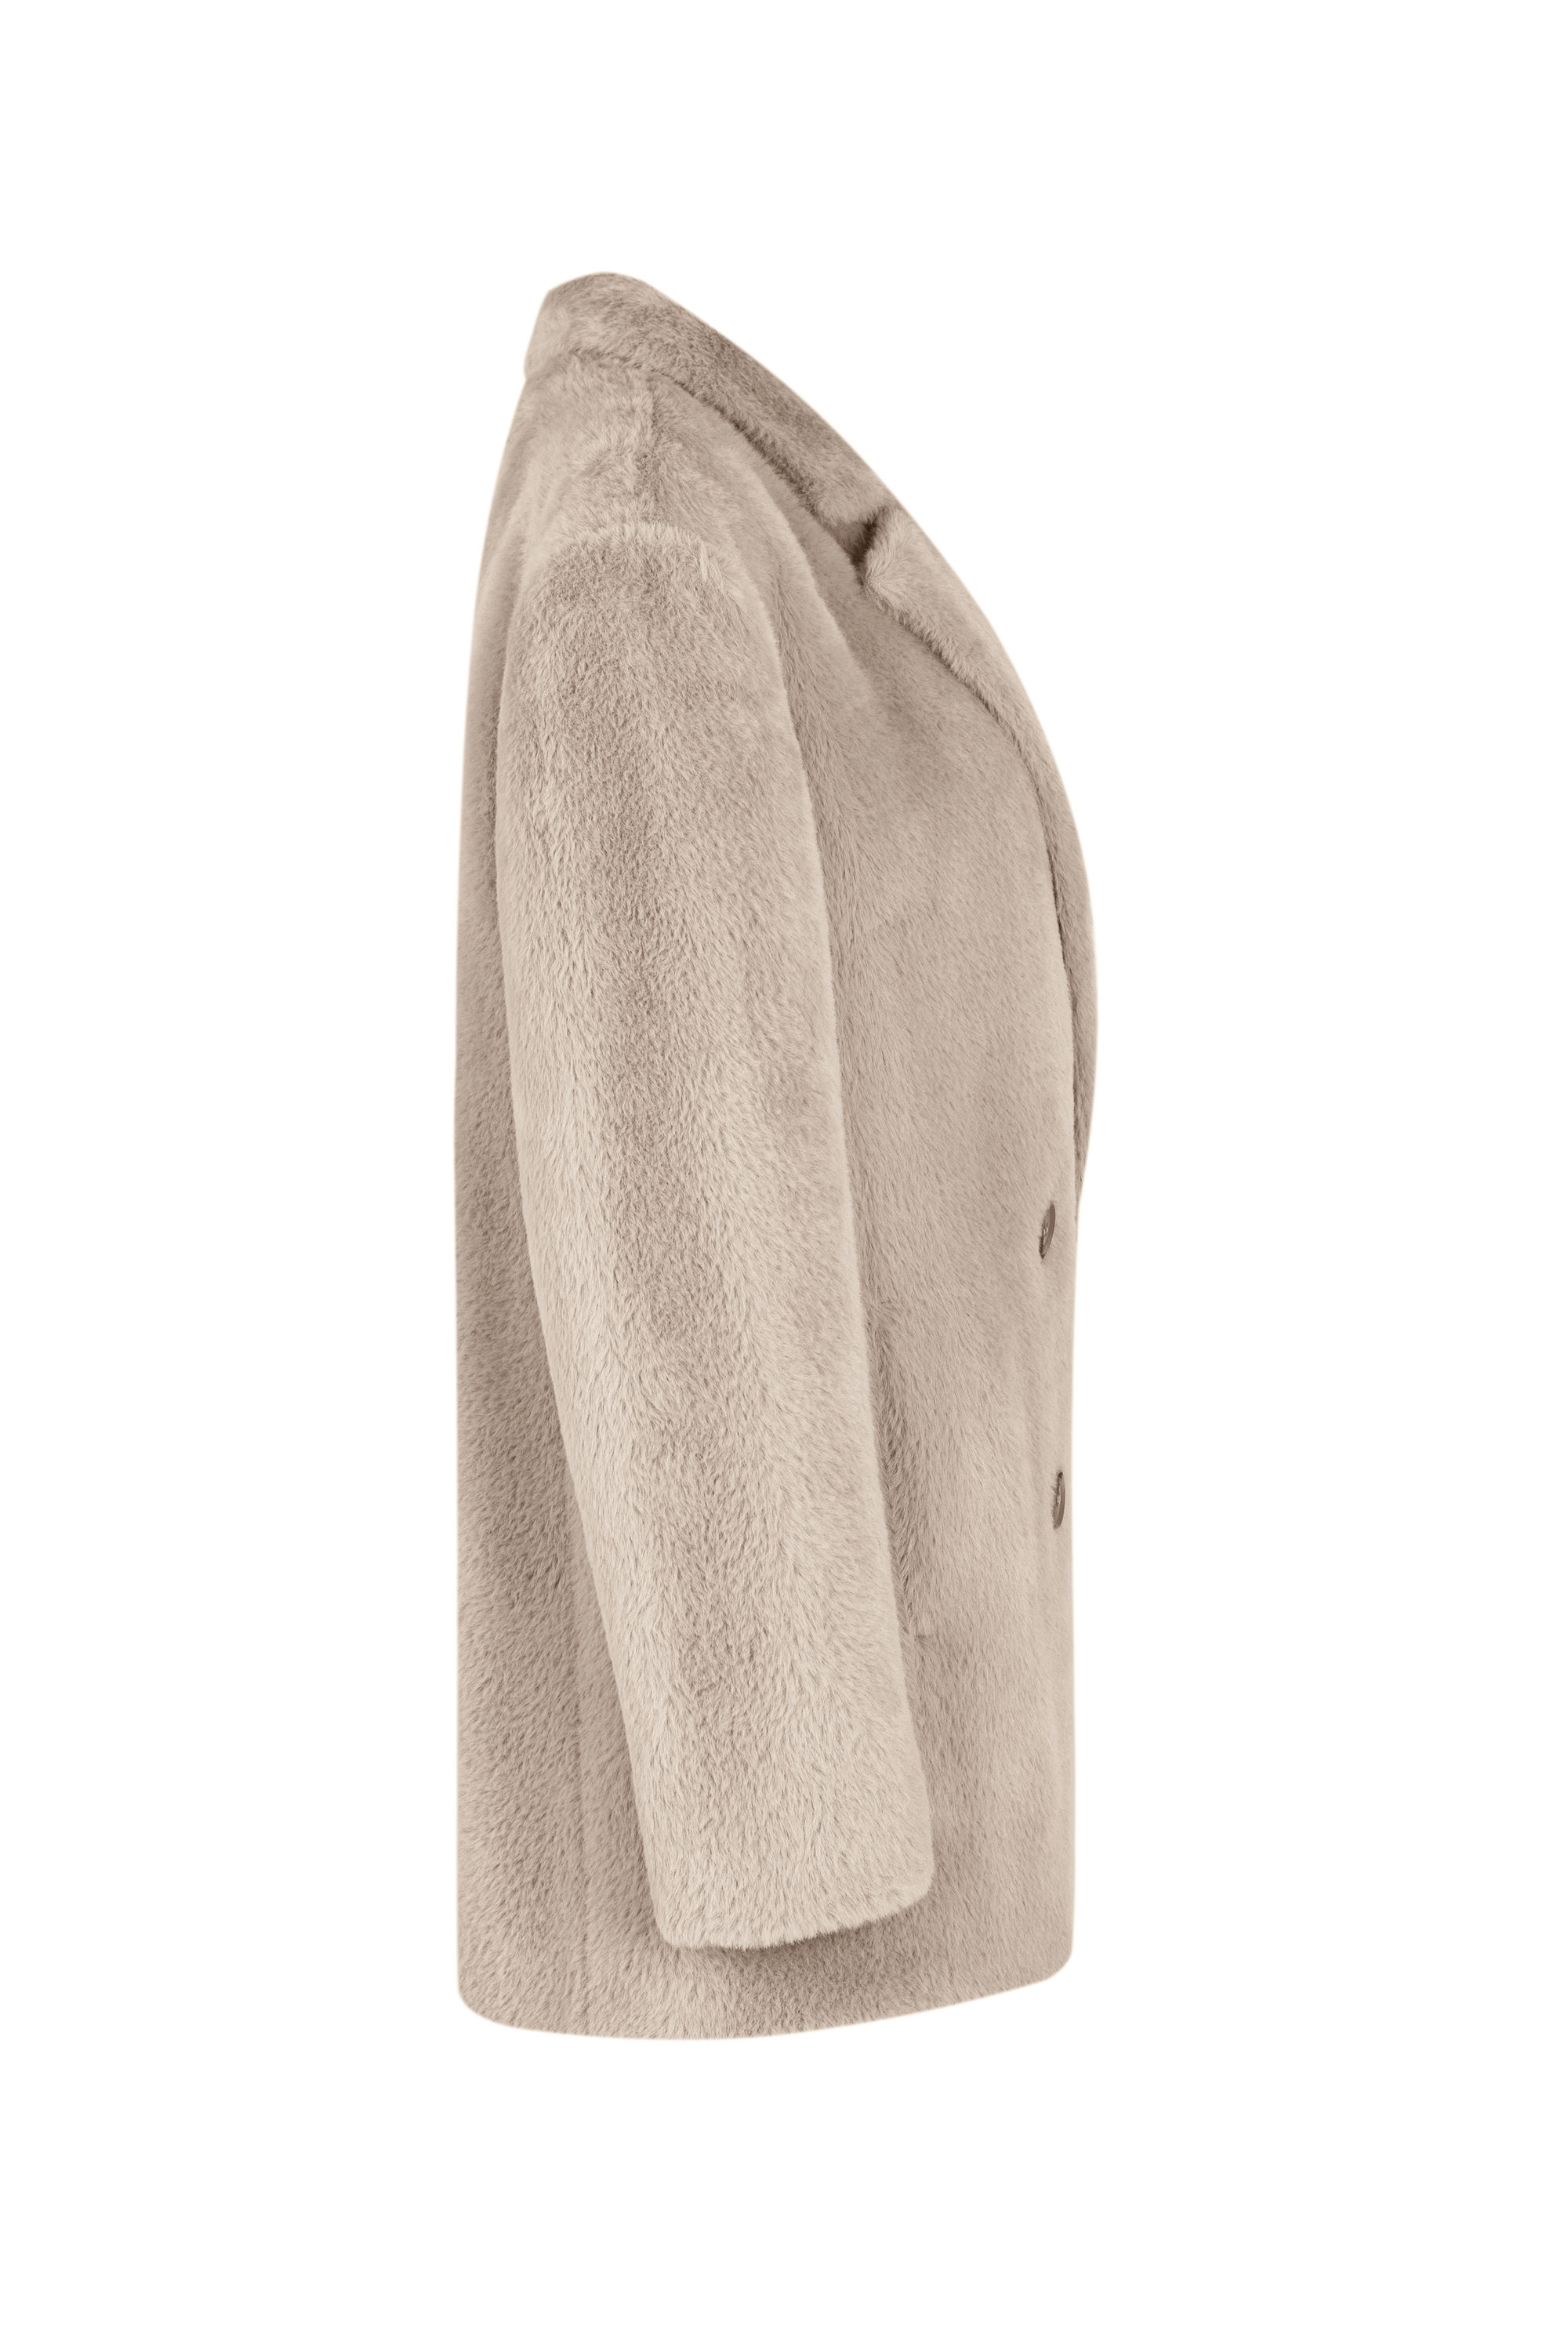 Пальто женское демисезонное 1-589. Фото 7.